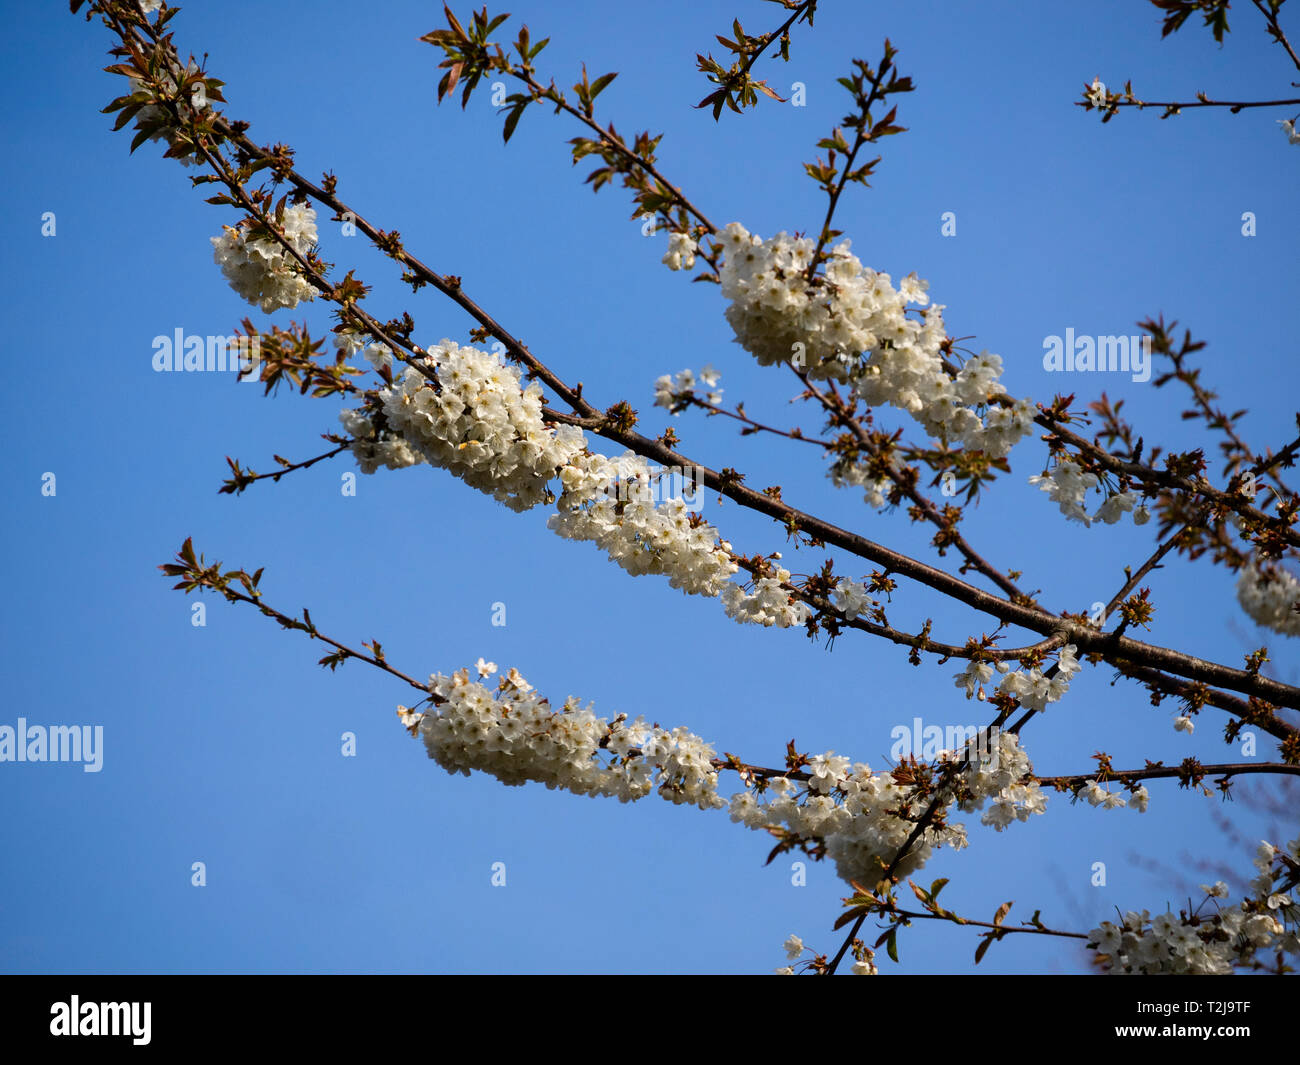 Densos racimos de flores blancas de los cerezos silvestres, Prunus avium, a principios de la primavera flor Foto de stock